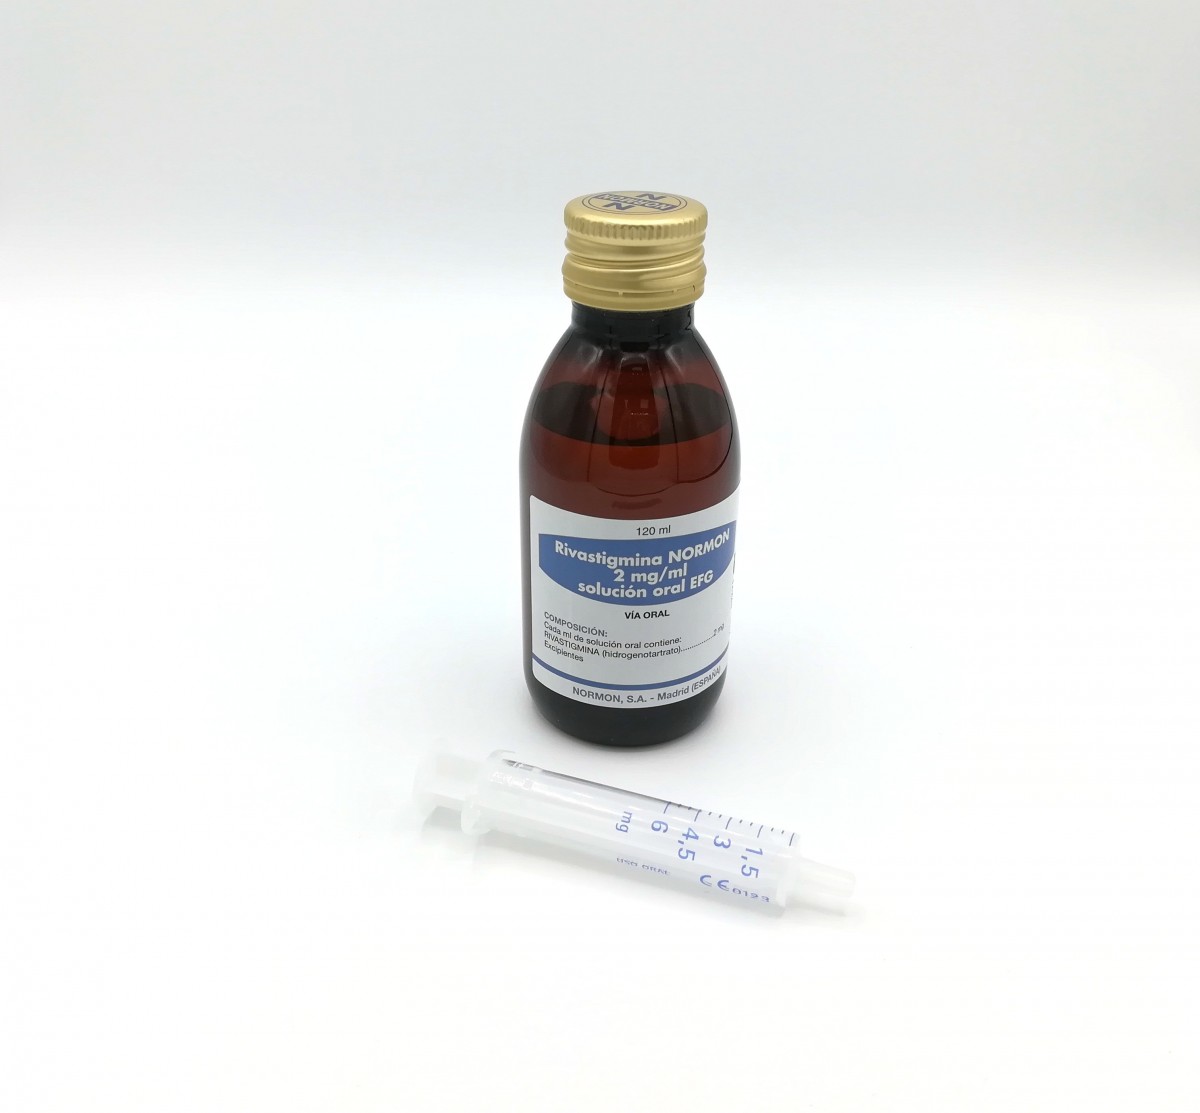 RIVASTIGMINA NORMON 2 mg/ml SOLUCION ORAL EFG, 1 frasco de 120 ml fotografía de la forma farmacéutica.